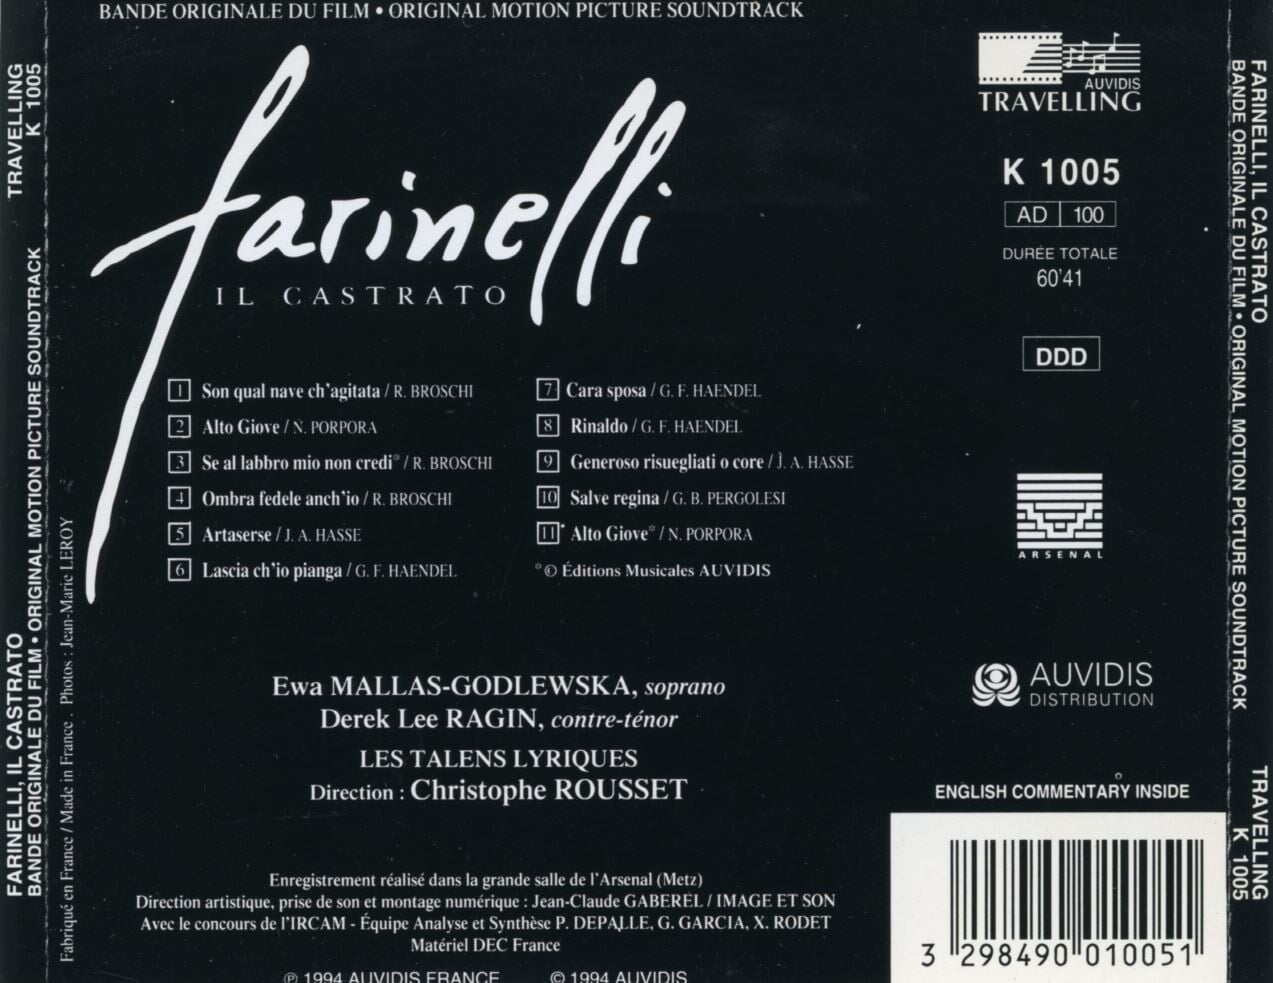 파리넬리 - Farinelli The Castrato OST [프랑스발매]